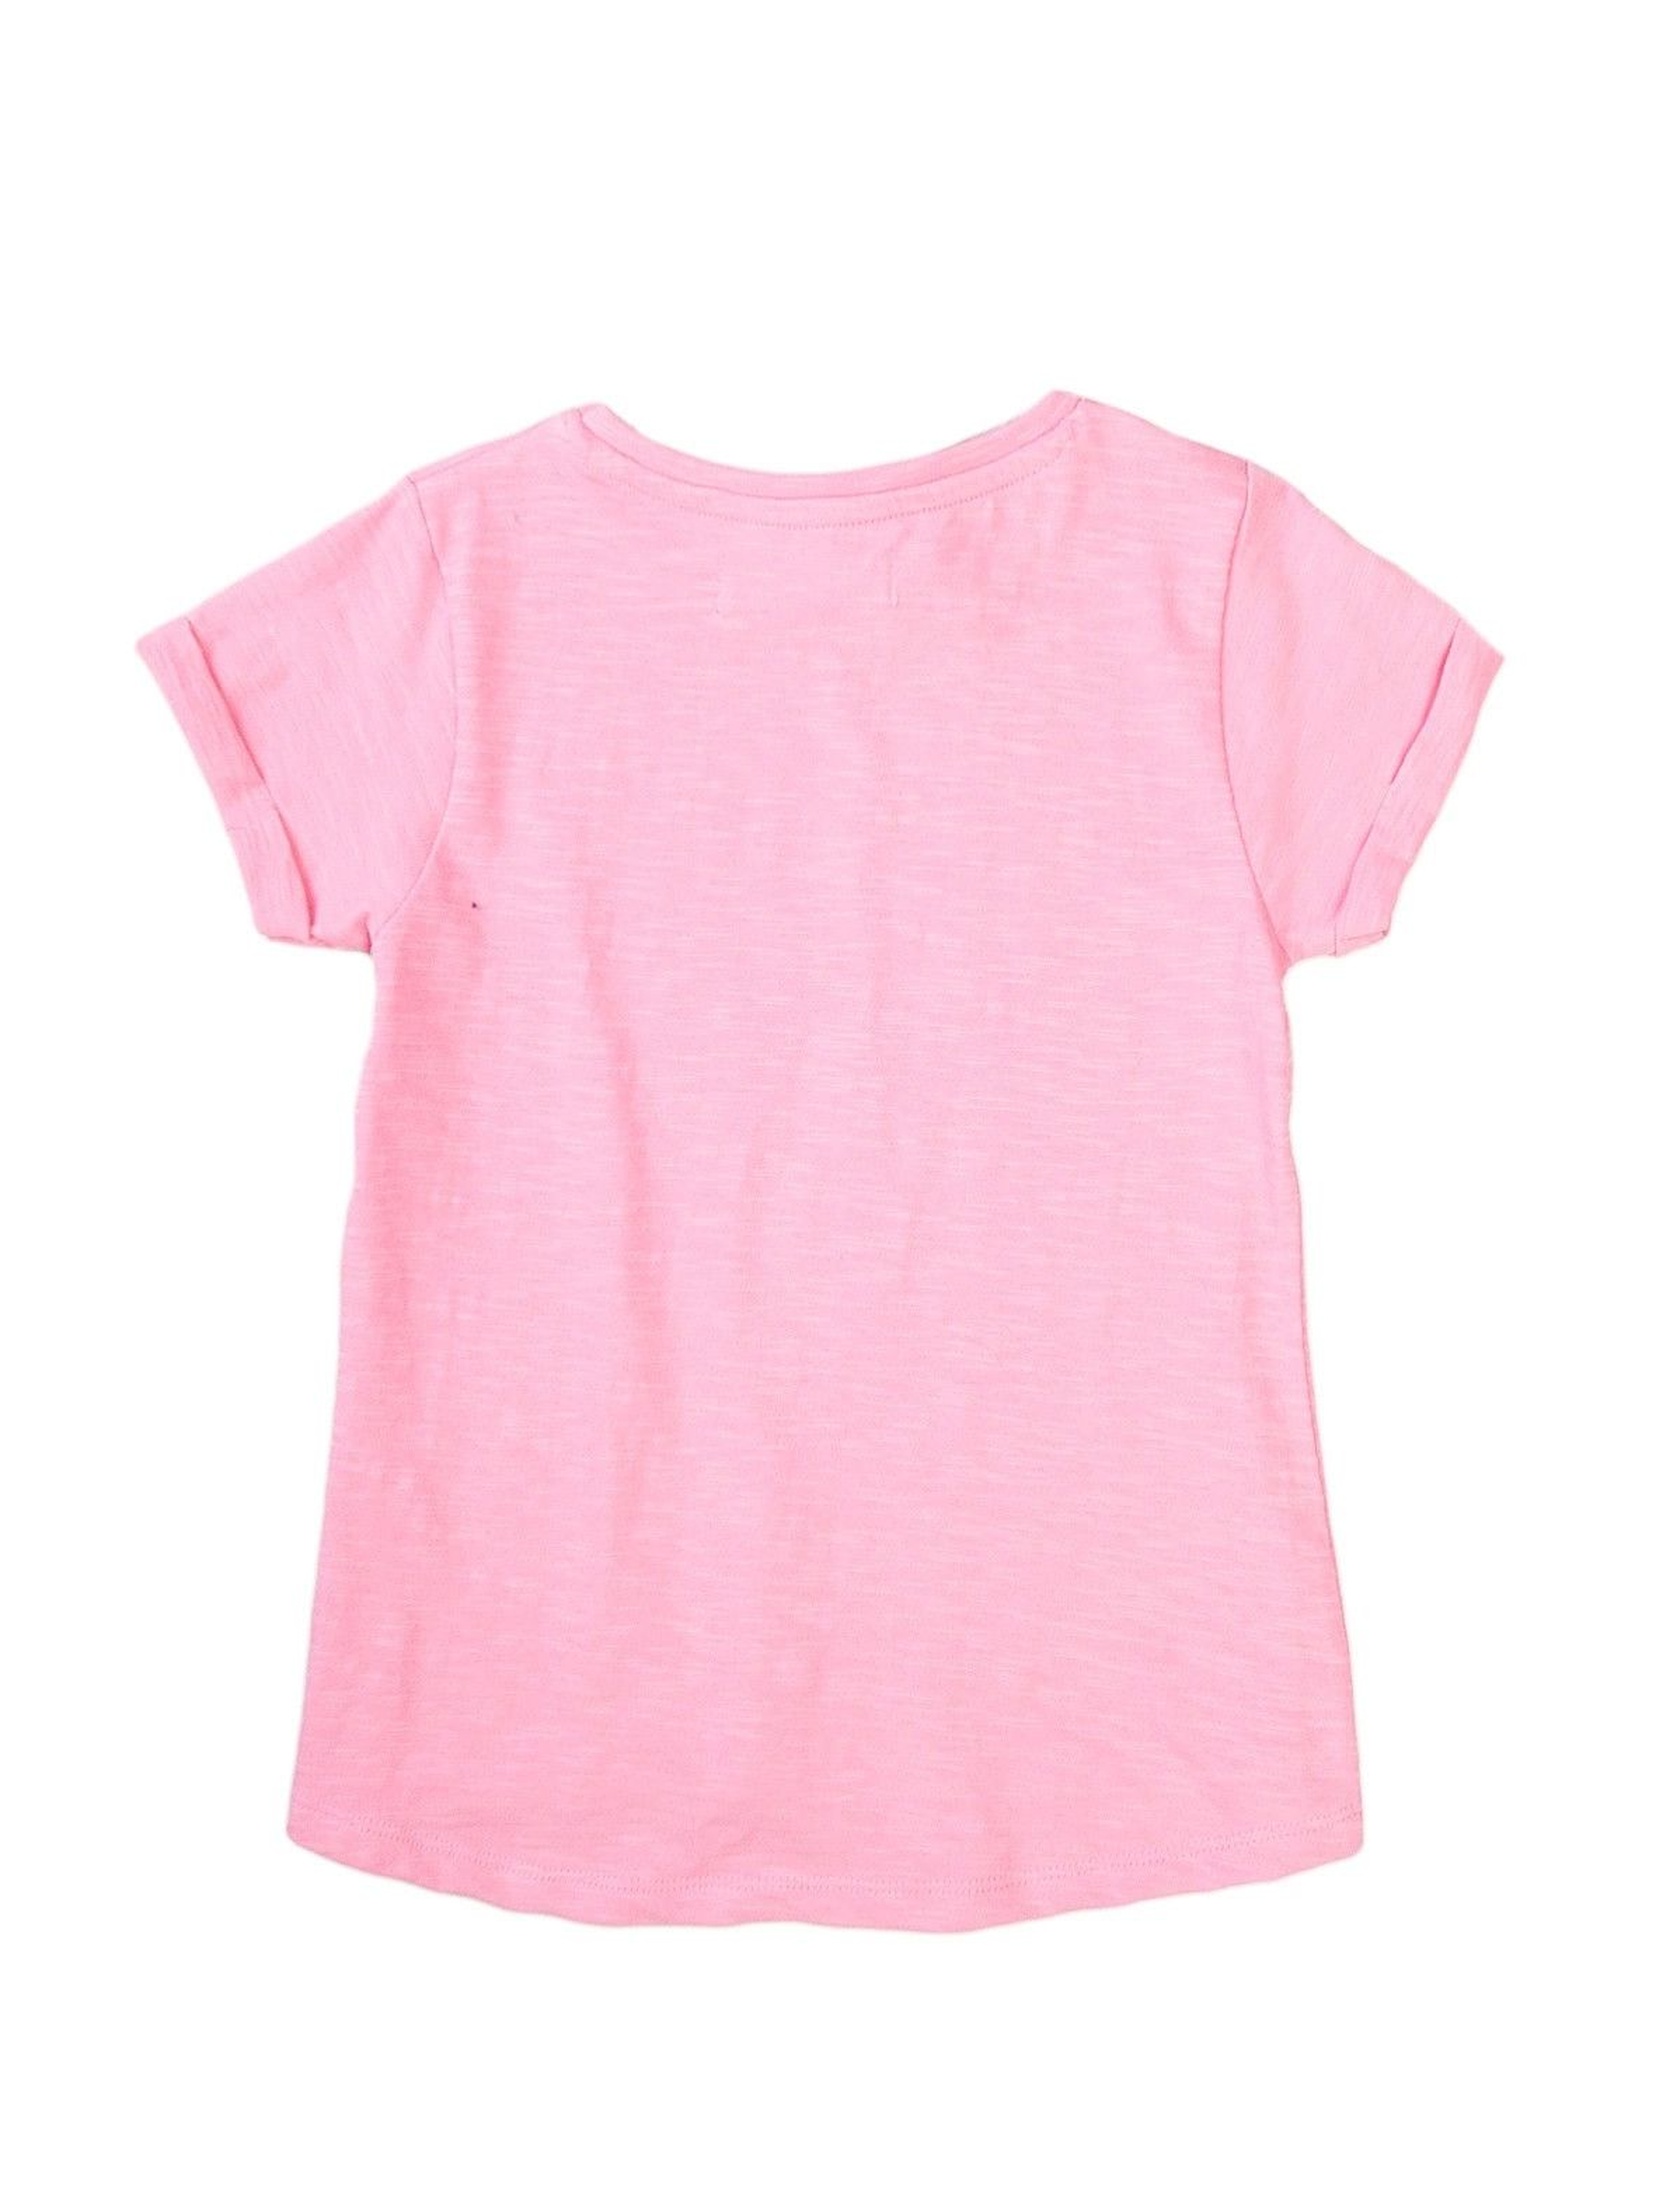 T-shirt dziewczęcy klasyczny różowy